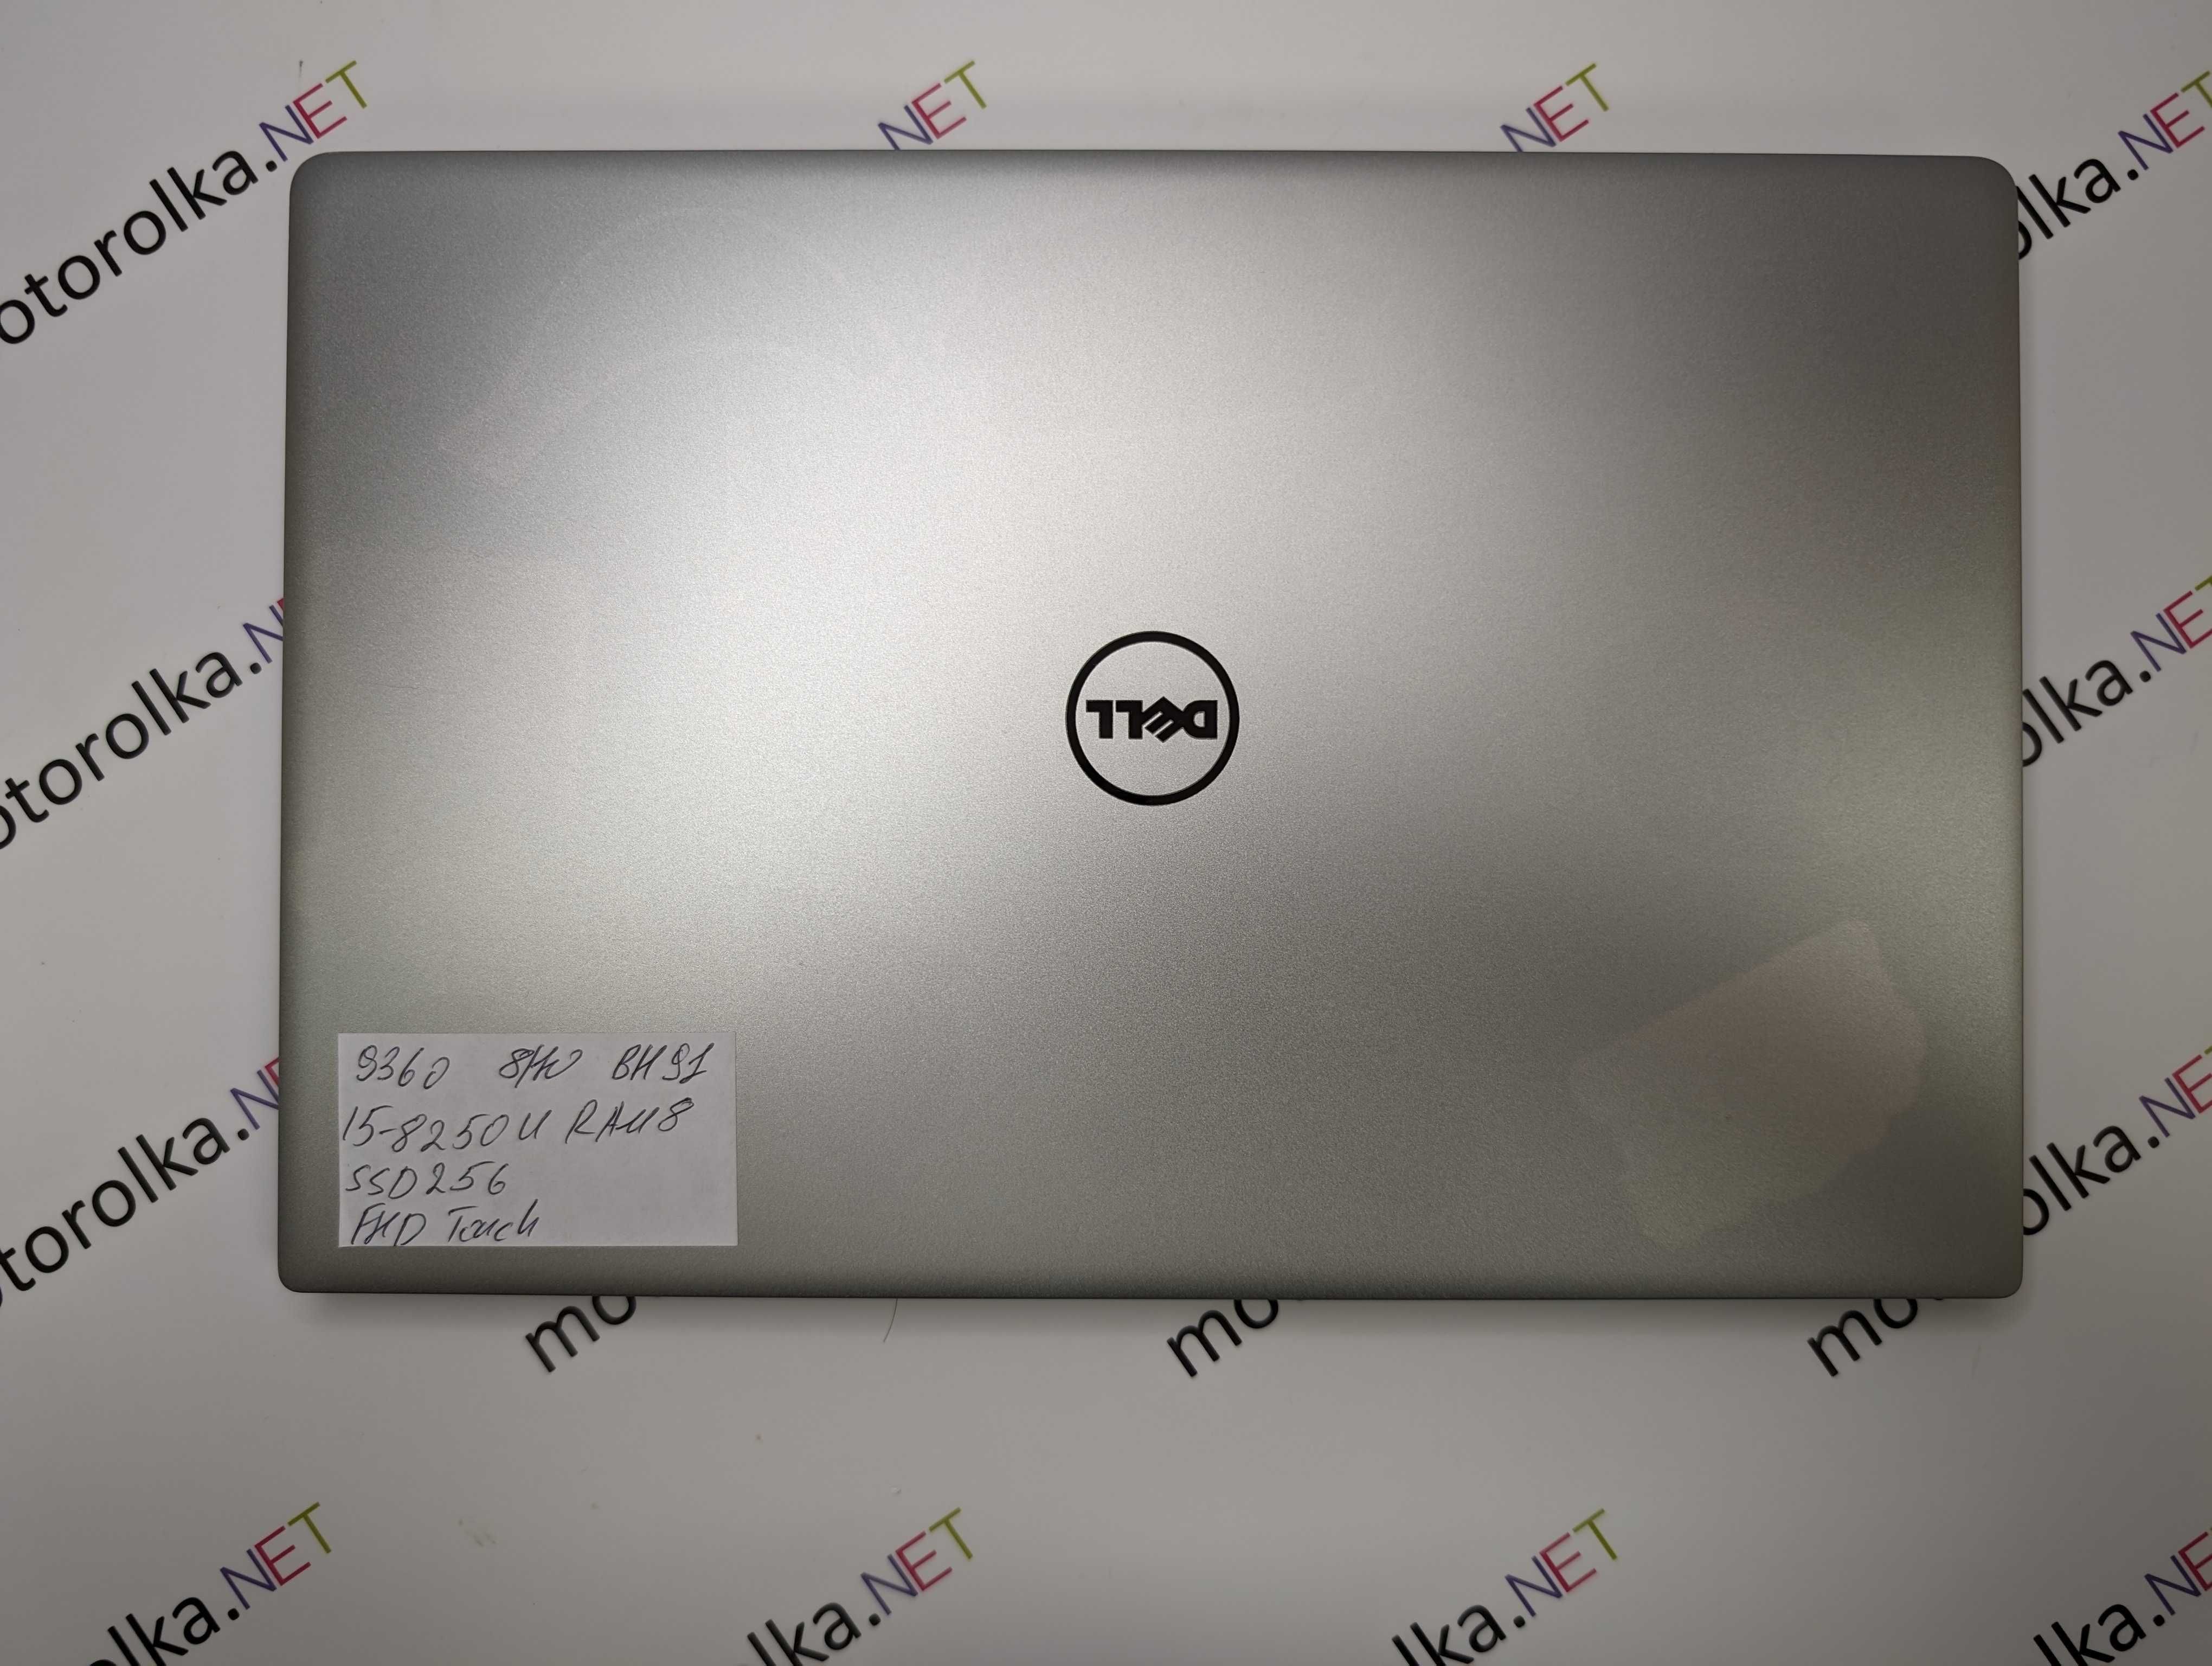 Ноутбук Dell XPS 13 9360 FullHD/i5-8250u/8 RAM/256 SSD сенсорный